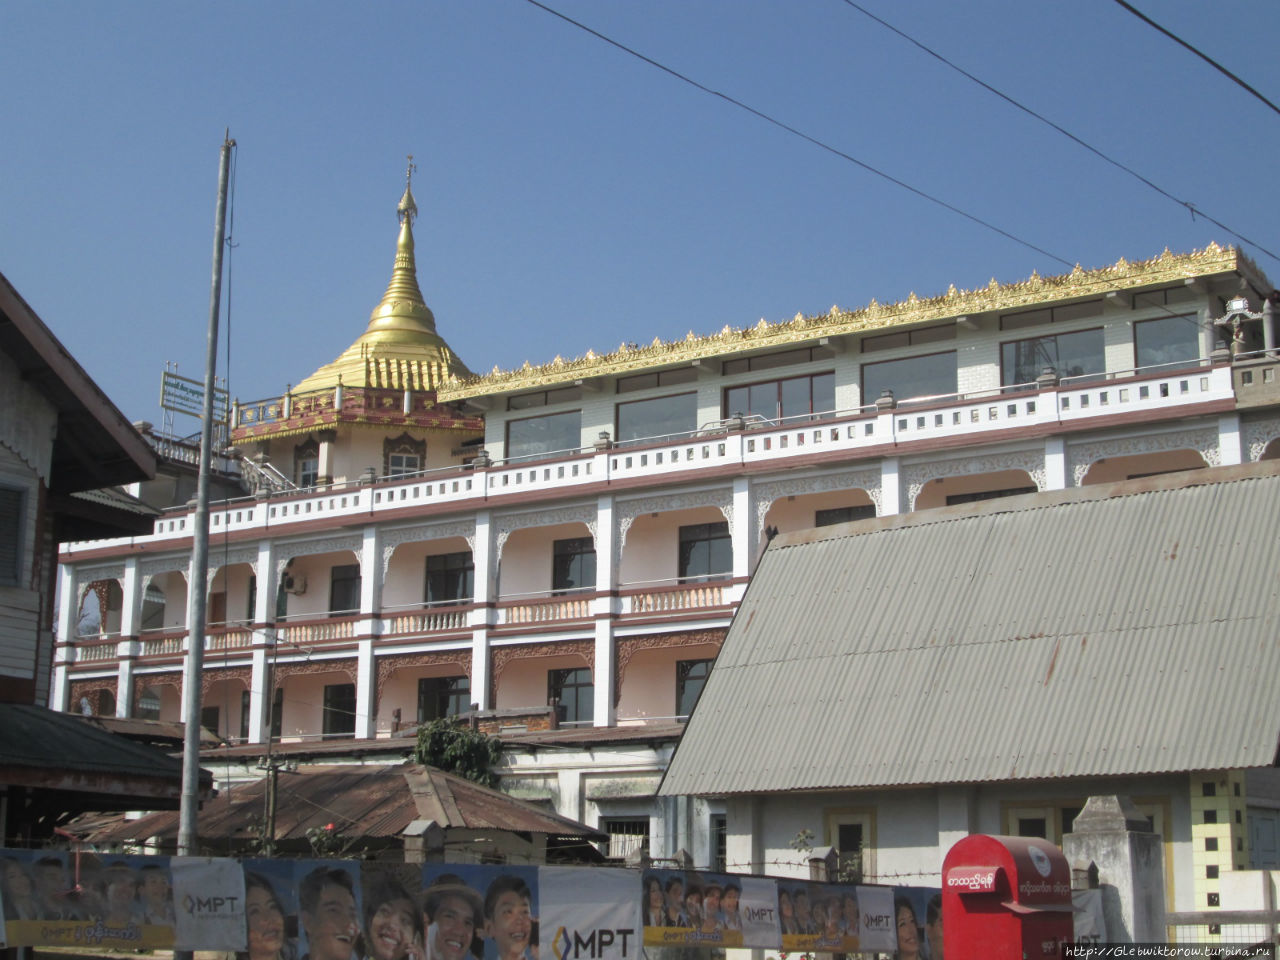 Бродилка по центру города Сипо, Мьянма